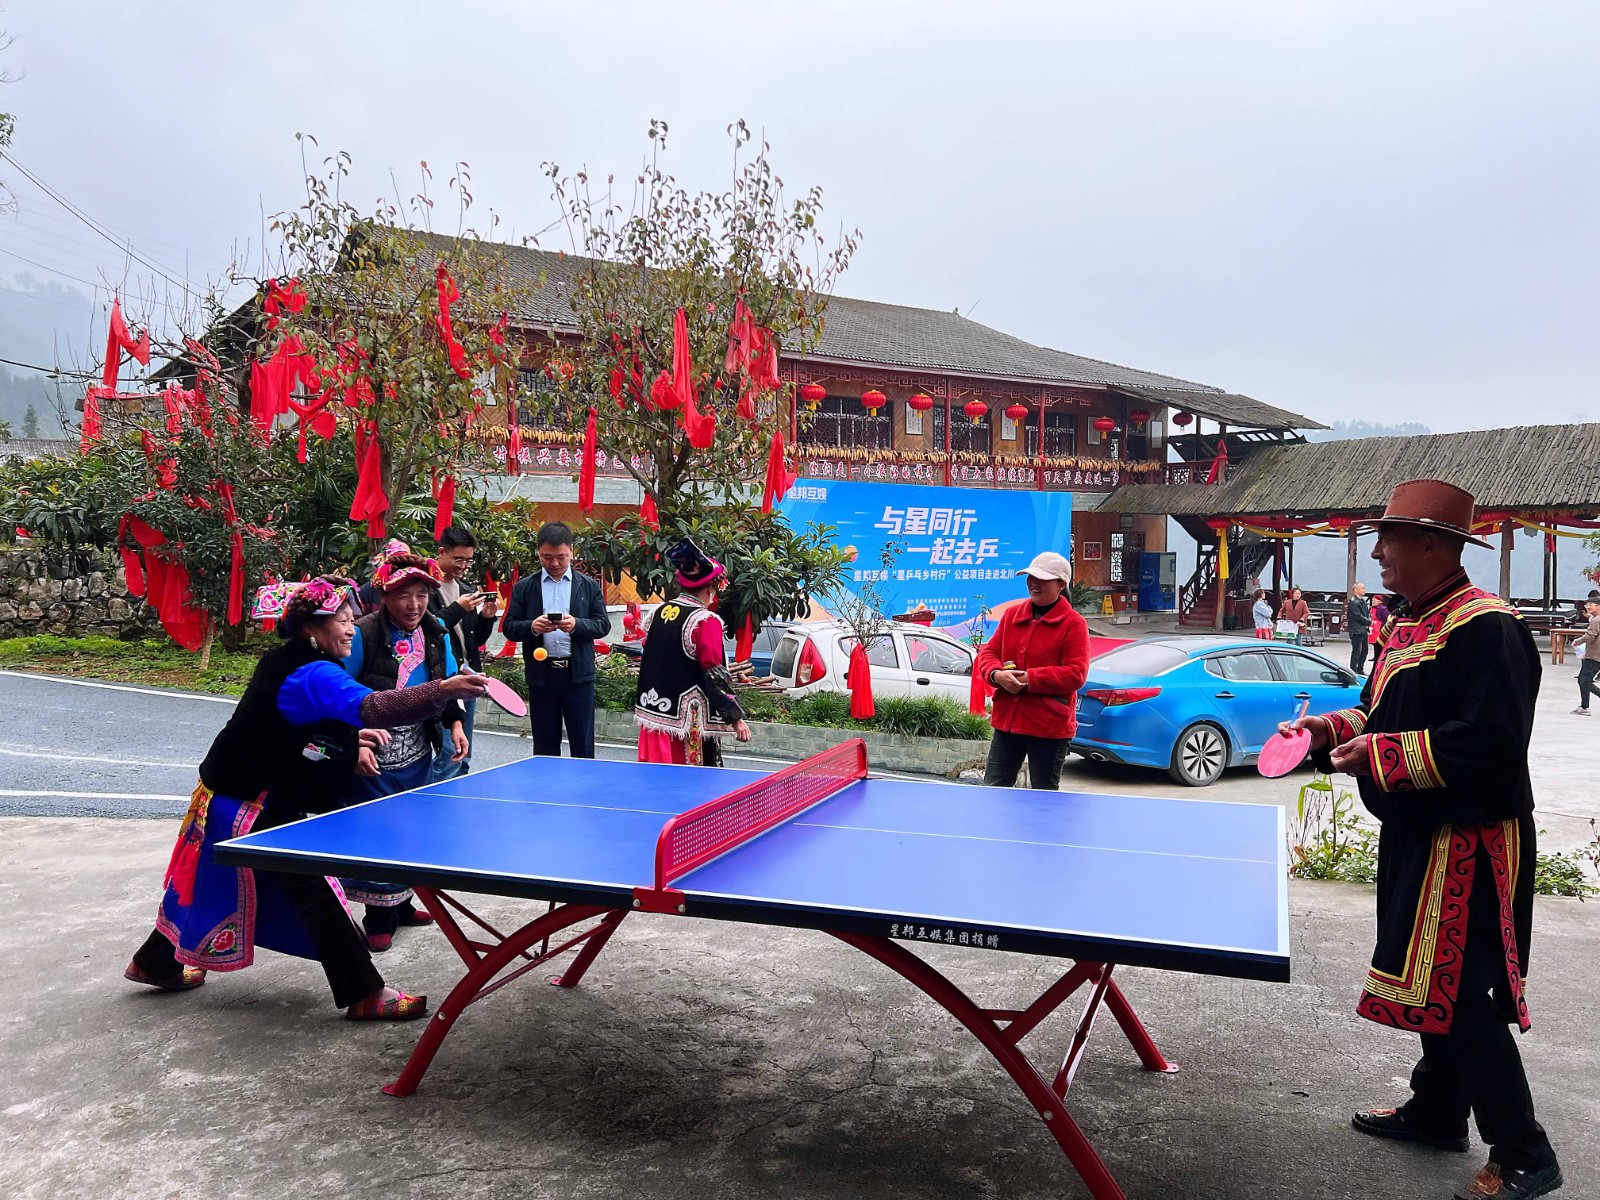 石椅村村民正使用星邦互娱赠送的乒乓球运动器材.jpg